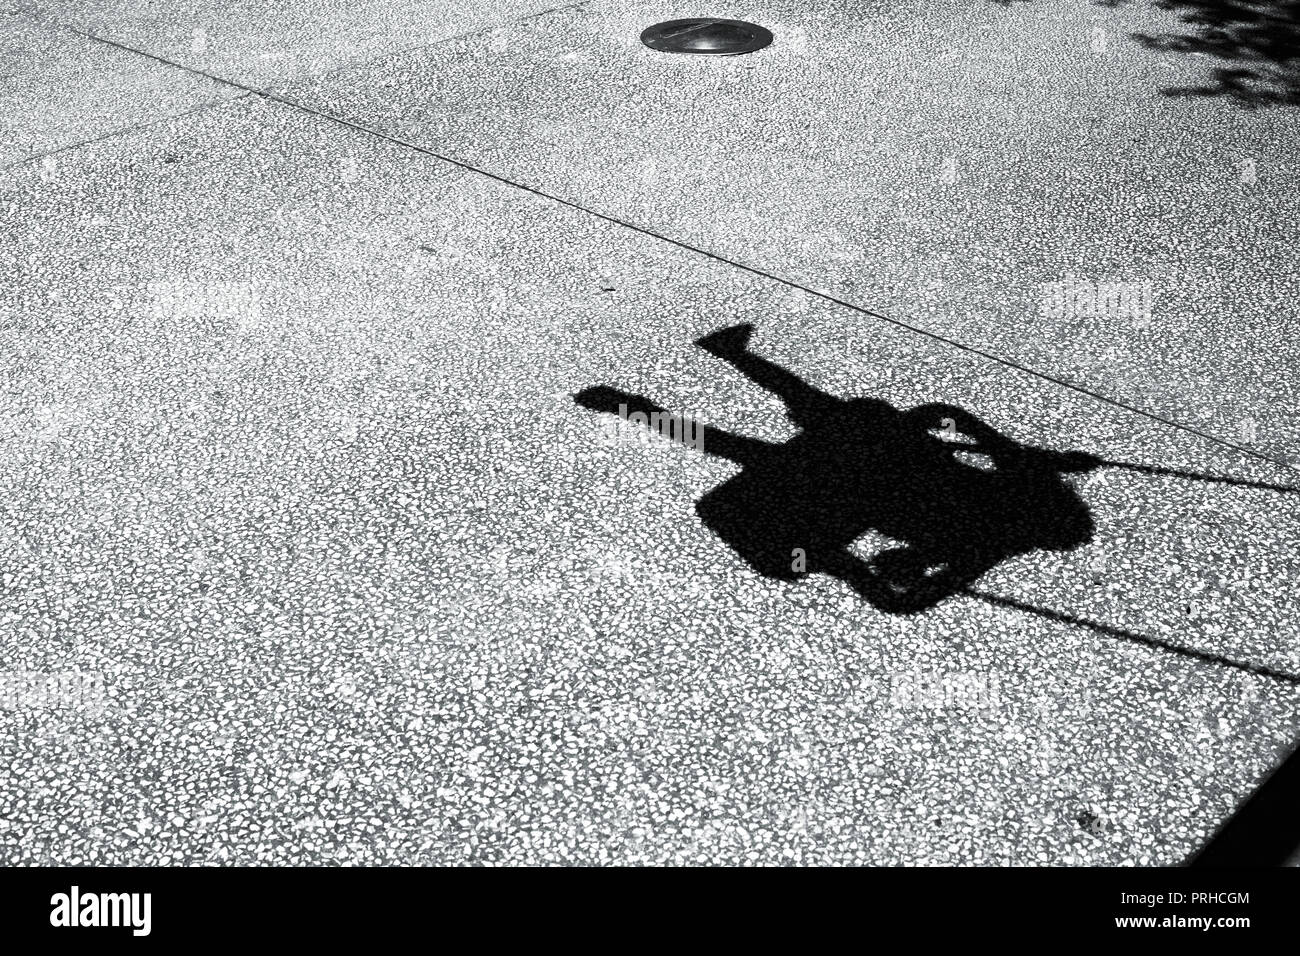 Ein Schatten, den ein Kind auf einer Schaukel Stockfotografie - Alamy